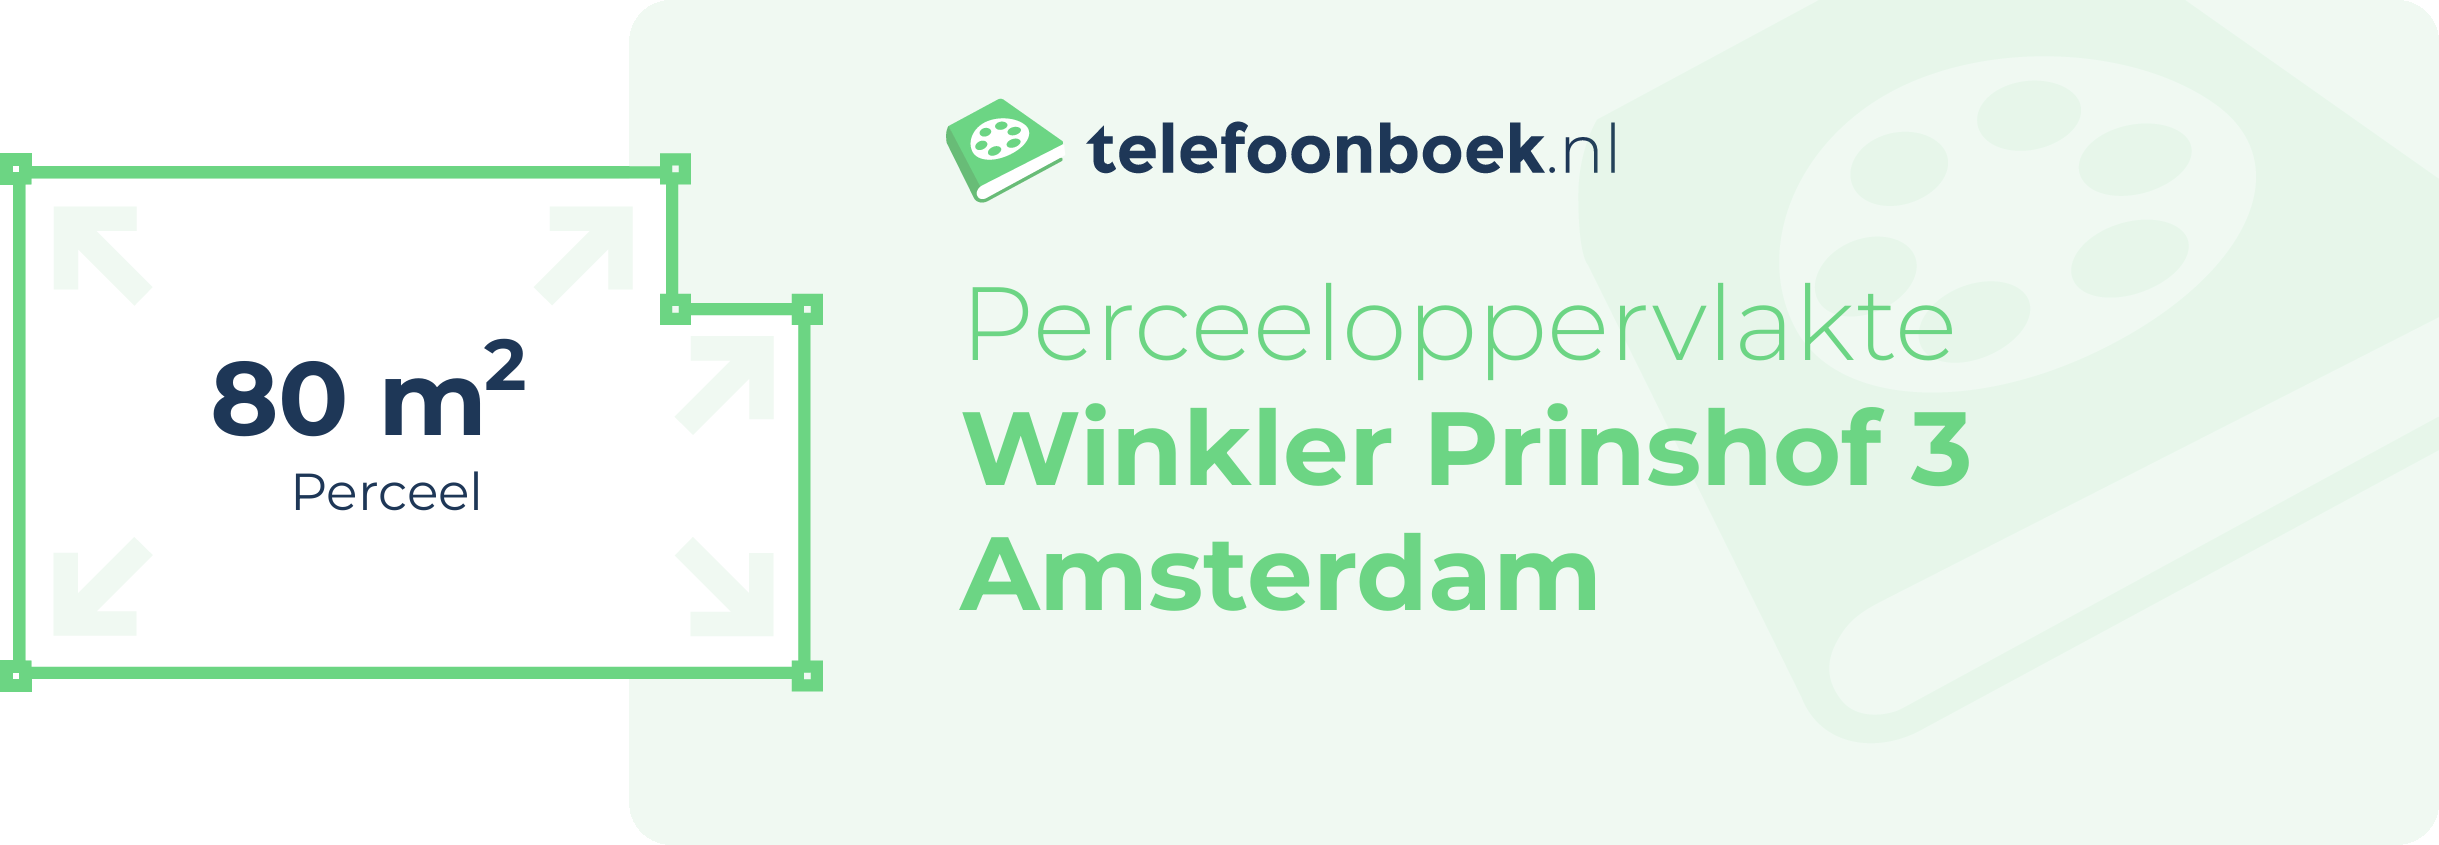 Perceeloppervlakte Winkler Prinshof 3 Amsterdam